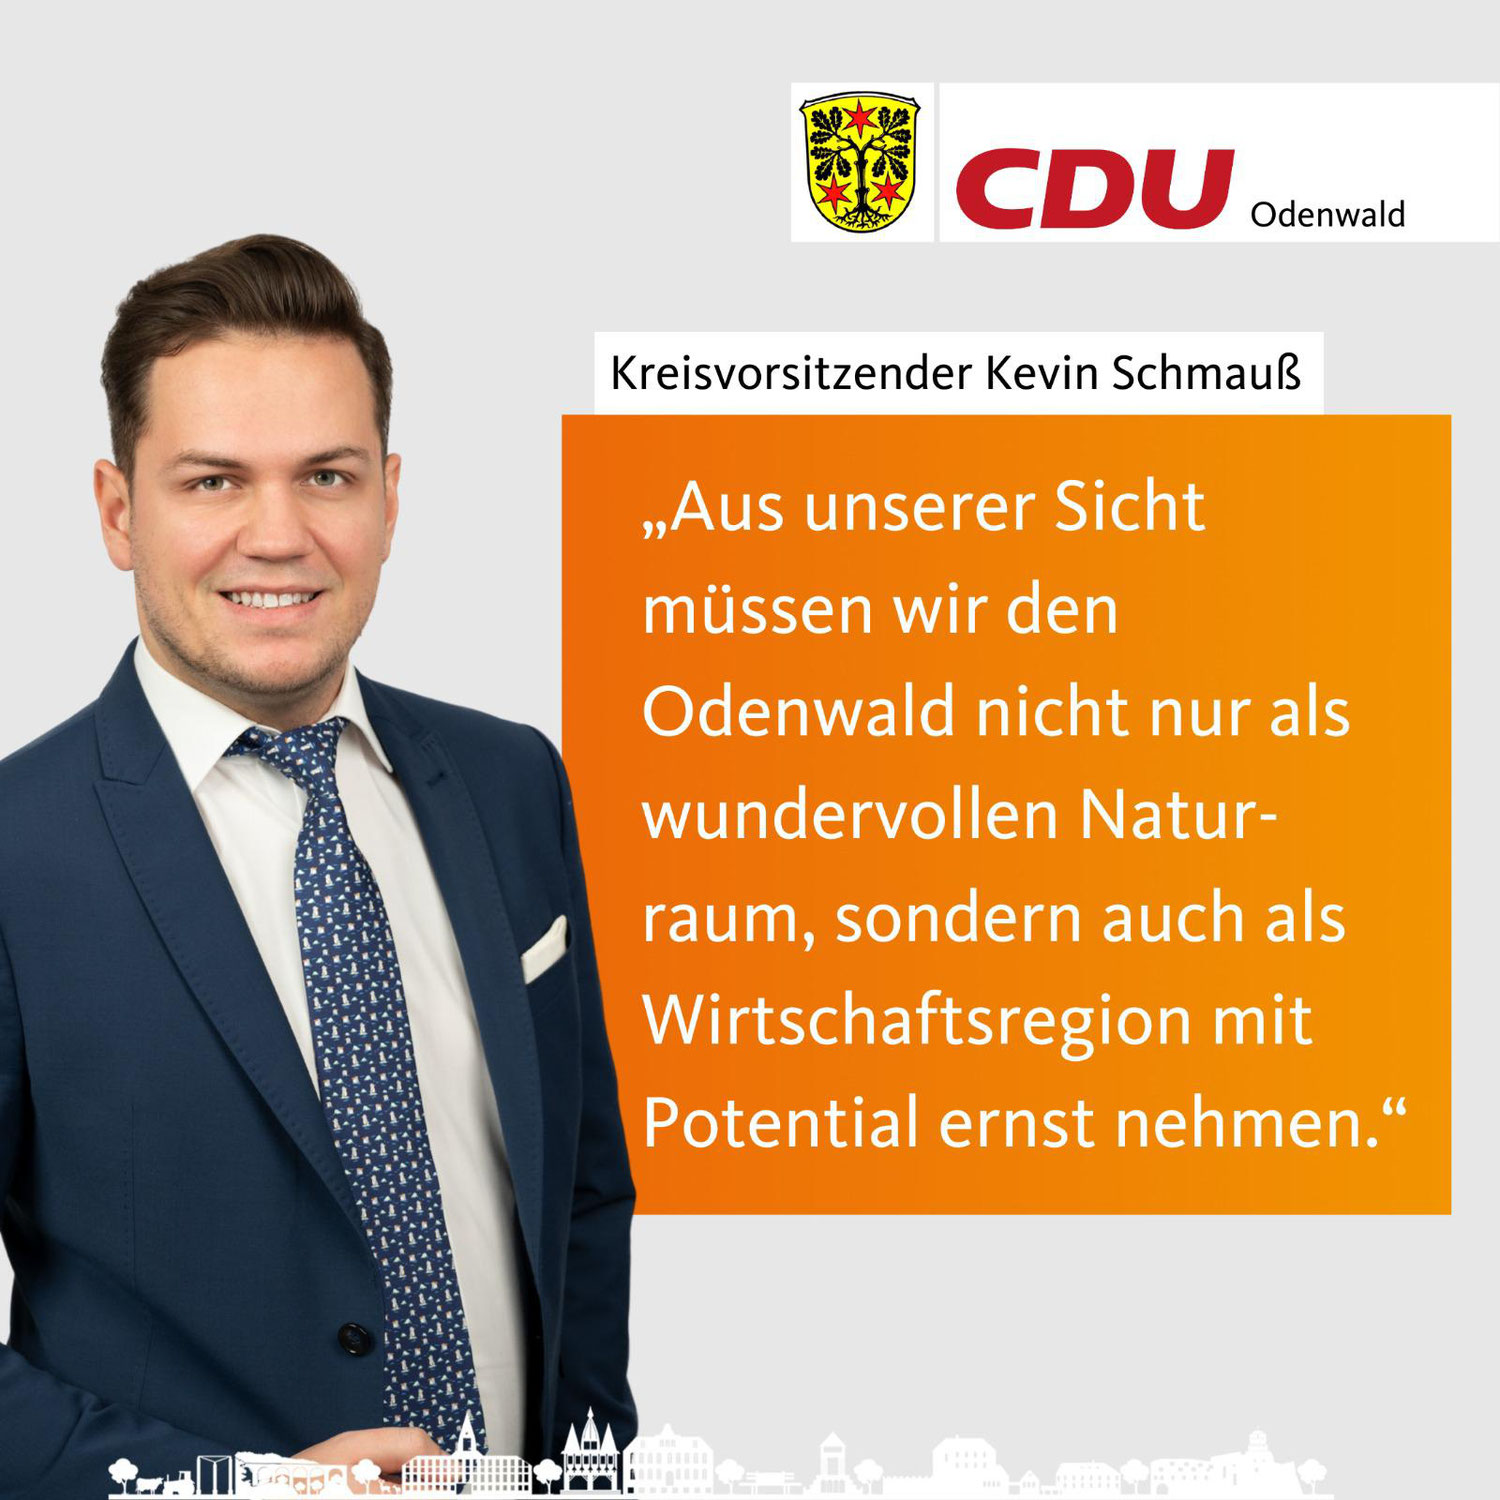 CDU Odenwald will Wirtschaftsforum für den Odenwaldkreis gründen 